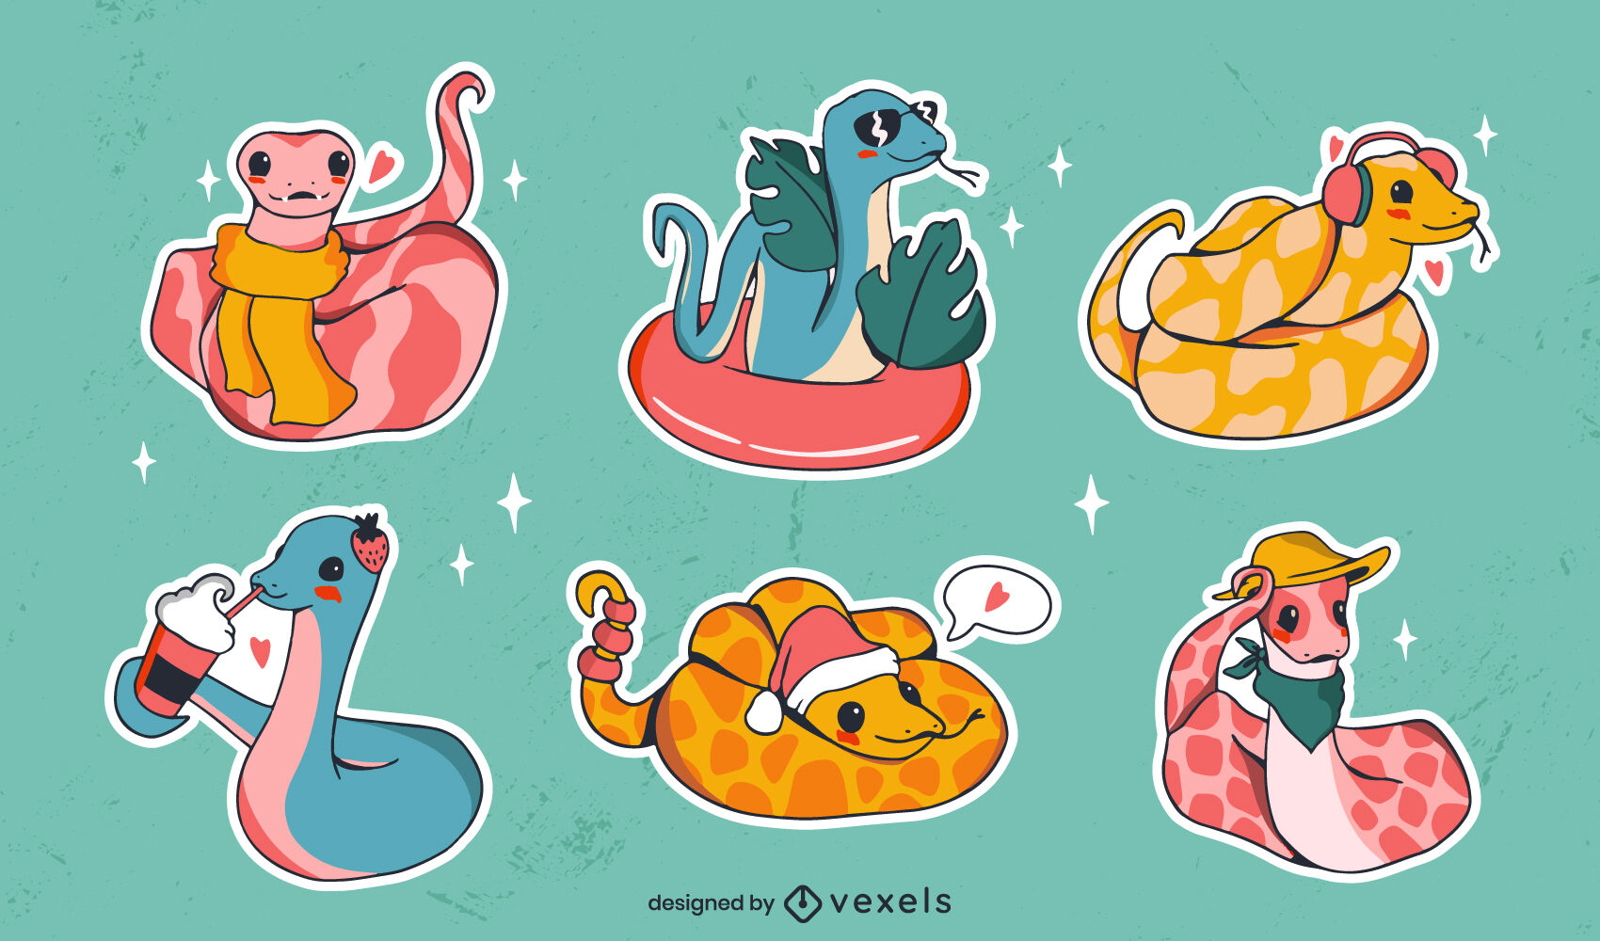 Set pegatinas serpientes con accesorios